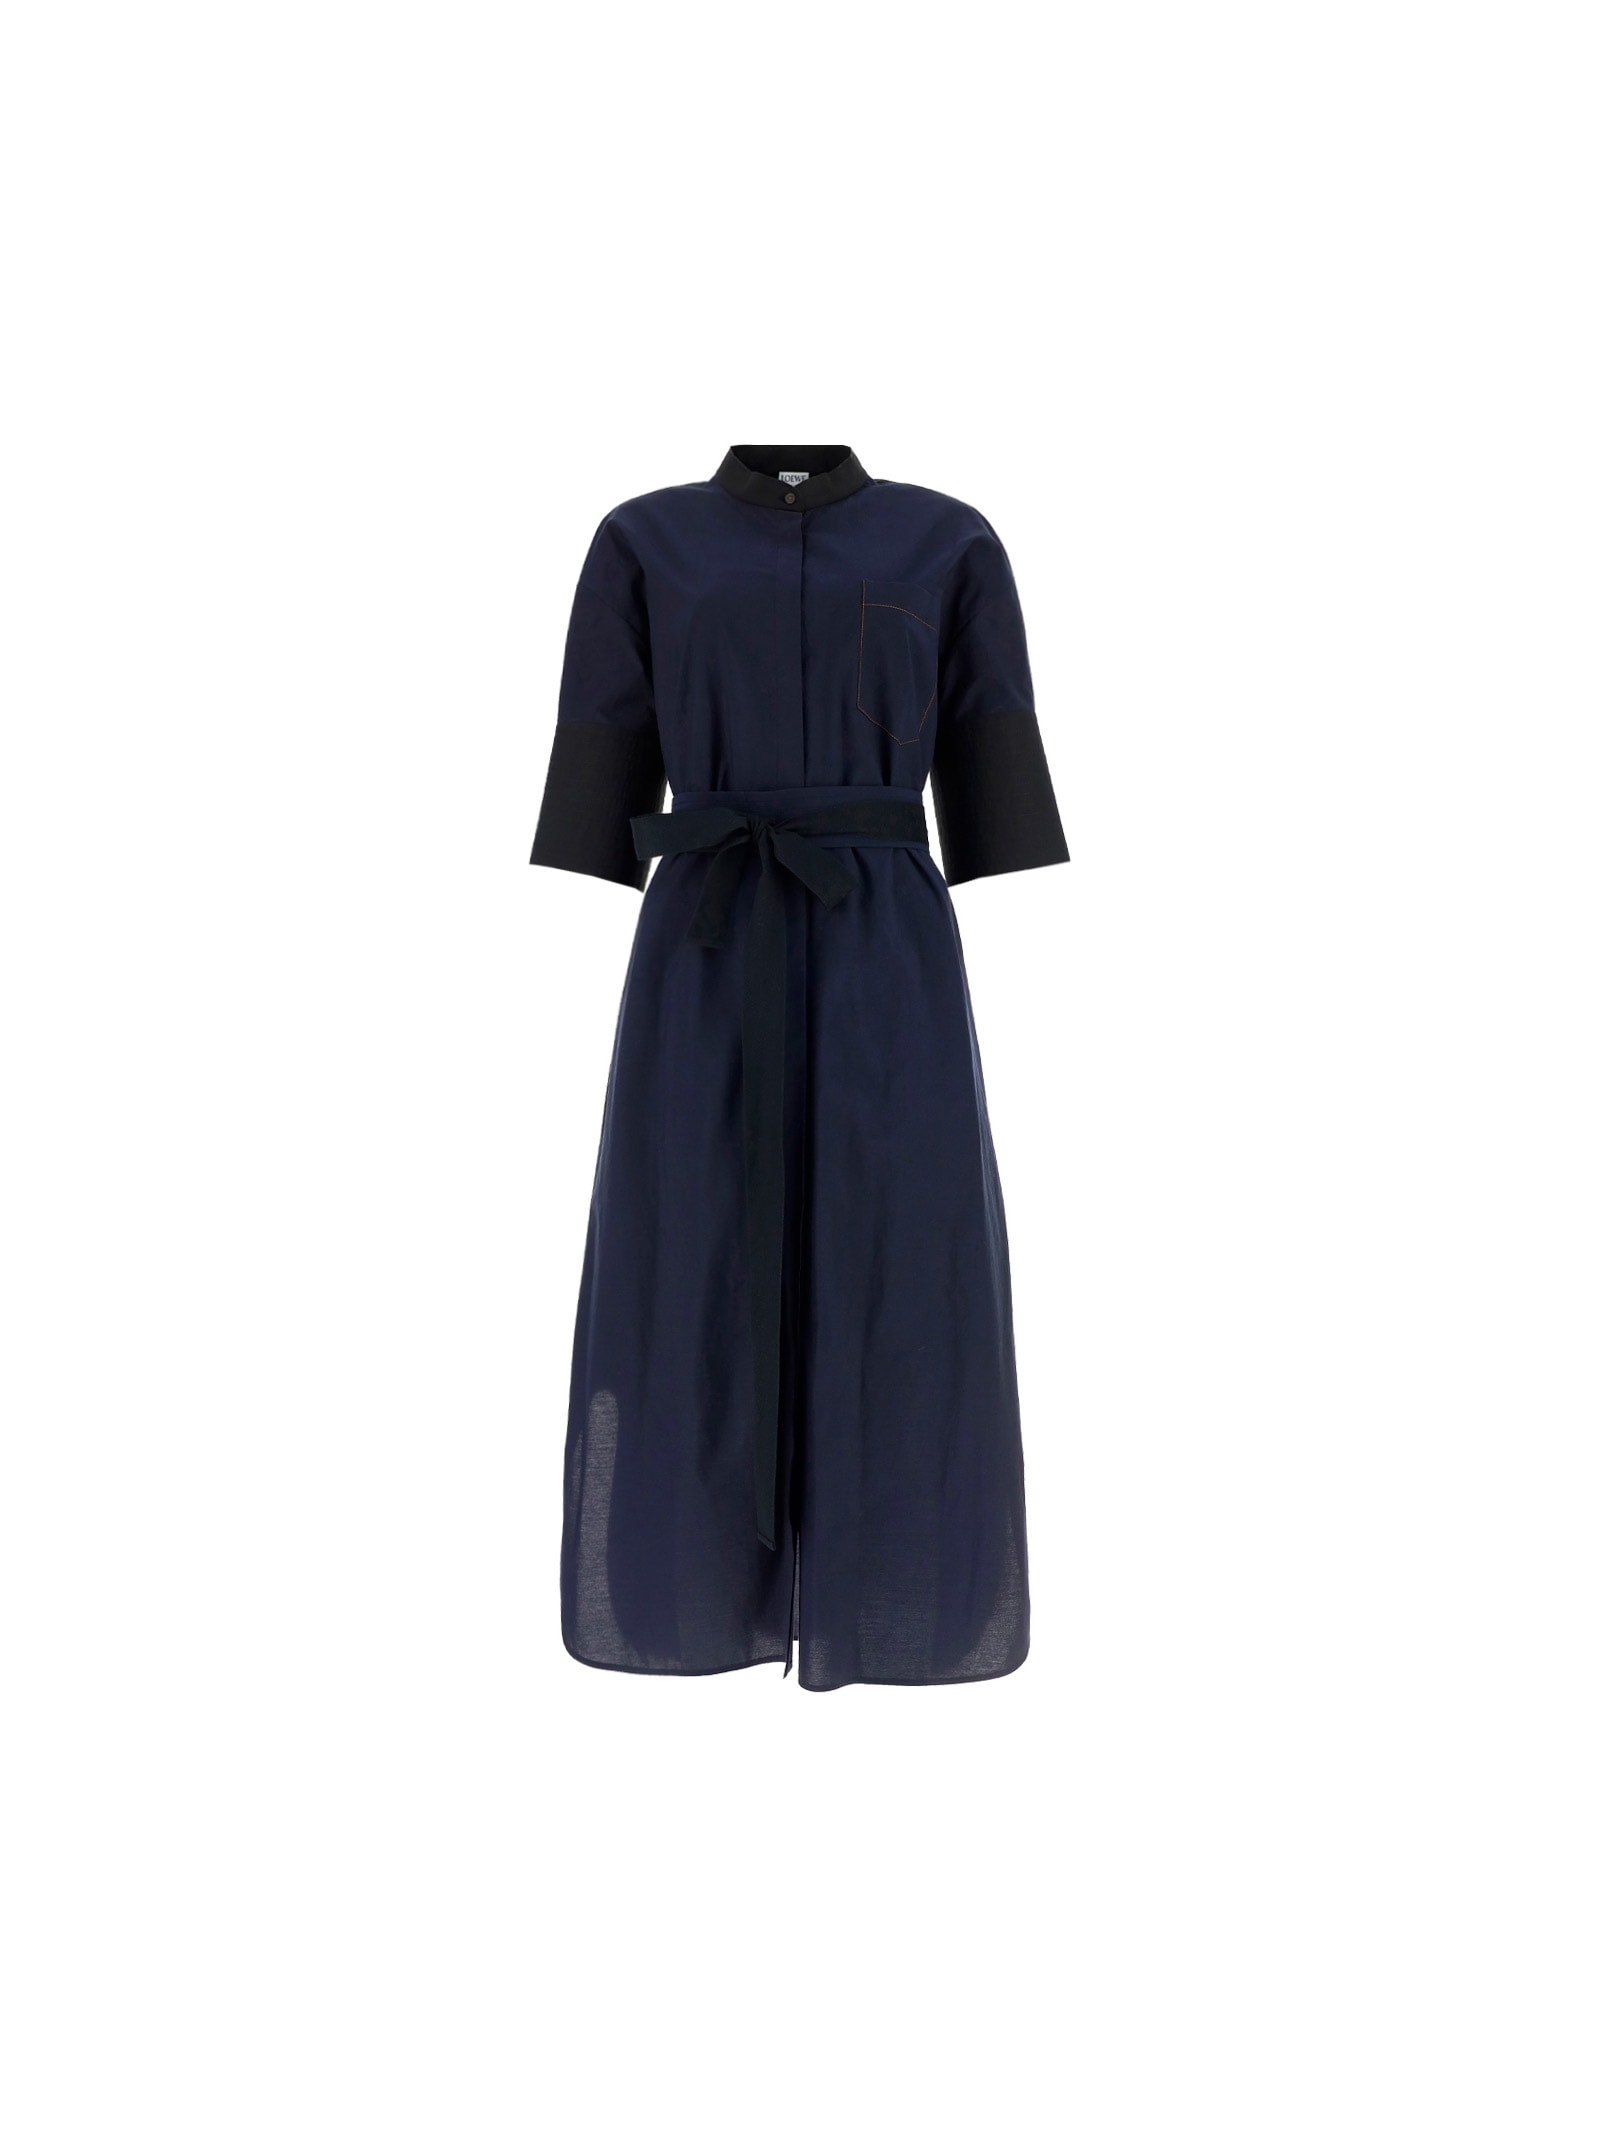 Loewe Dress In Black/navy Blue | ModeSens